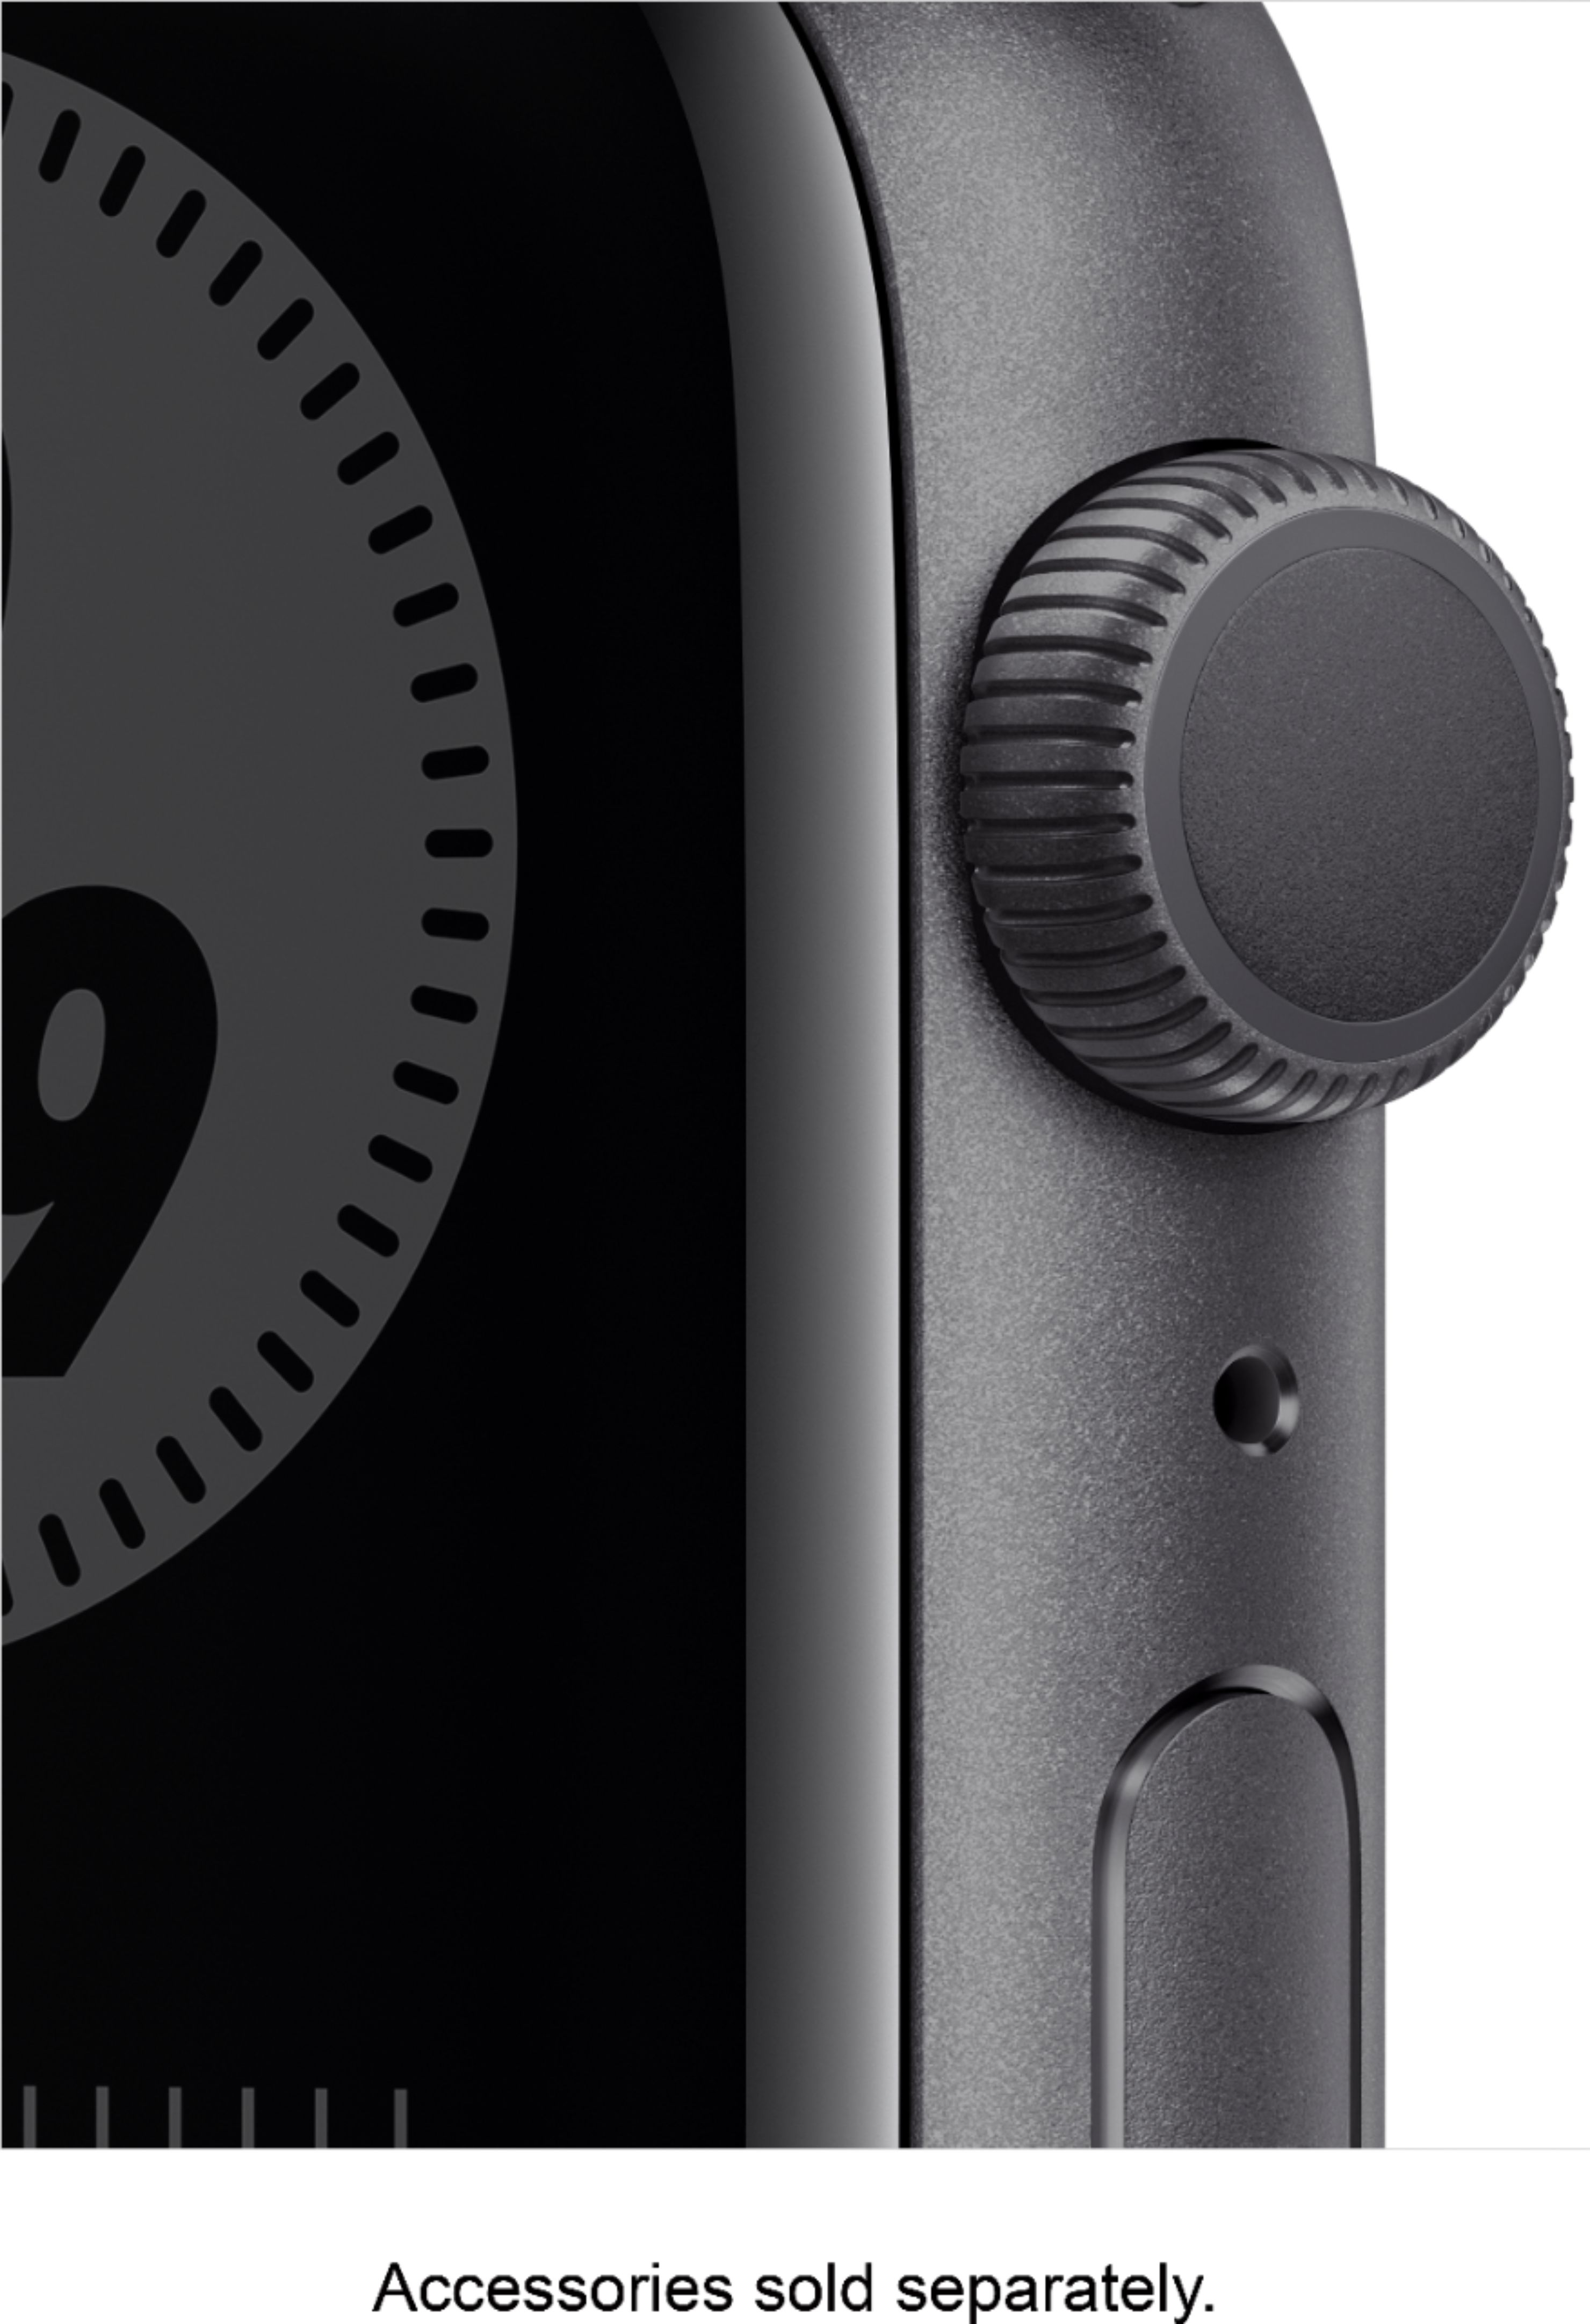 最高品質の限定商品 Nike Watch Apple series6 gray space その他